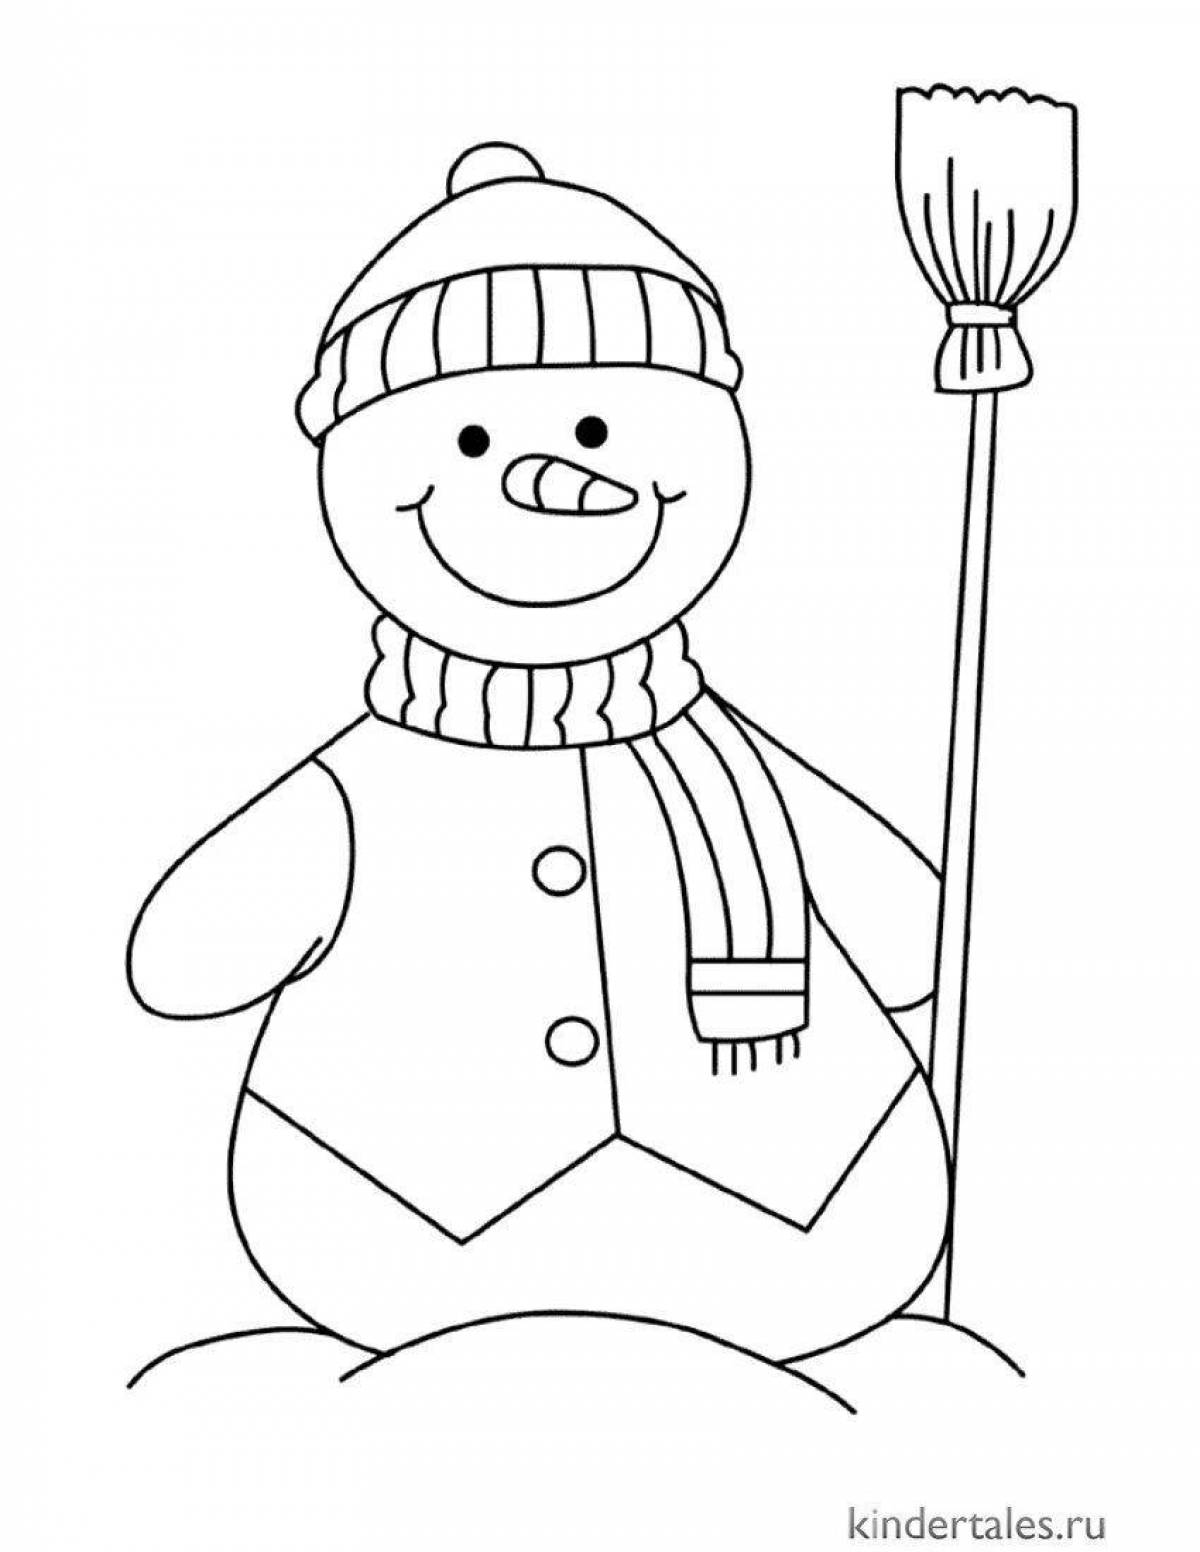 Причудливая раскраска снеговик для детей 5 лет